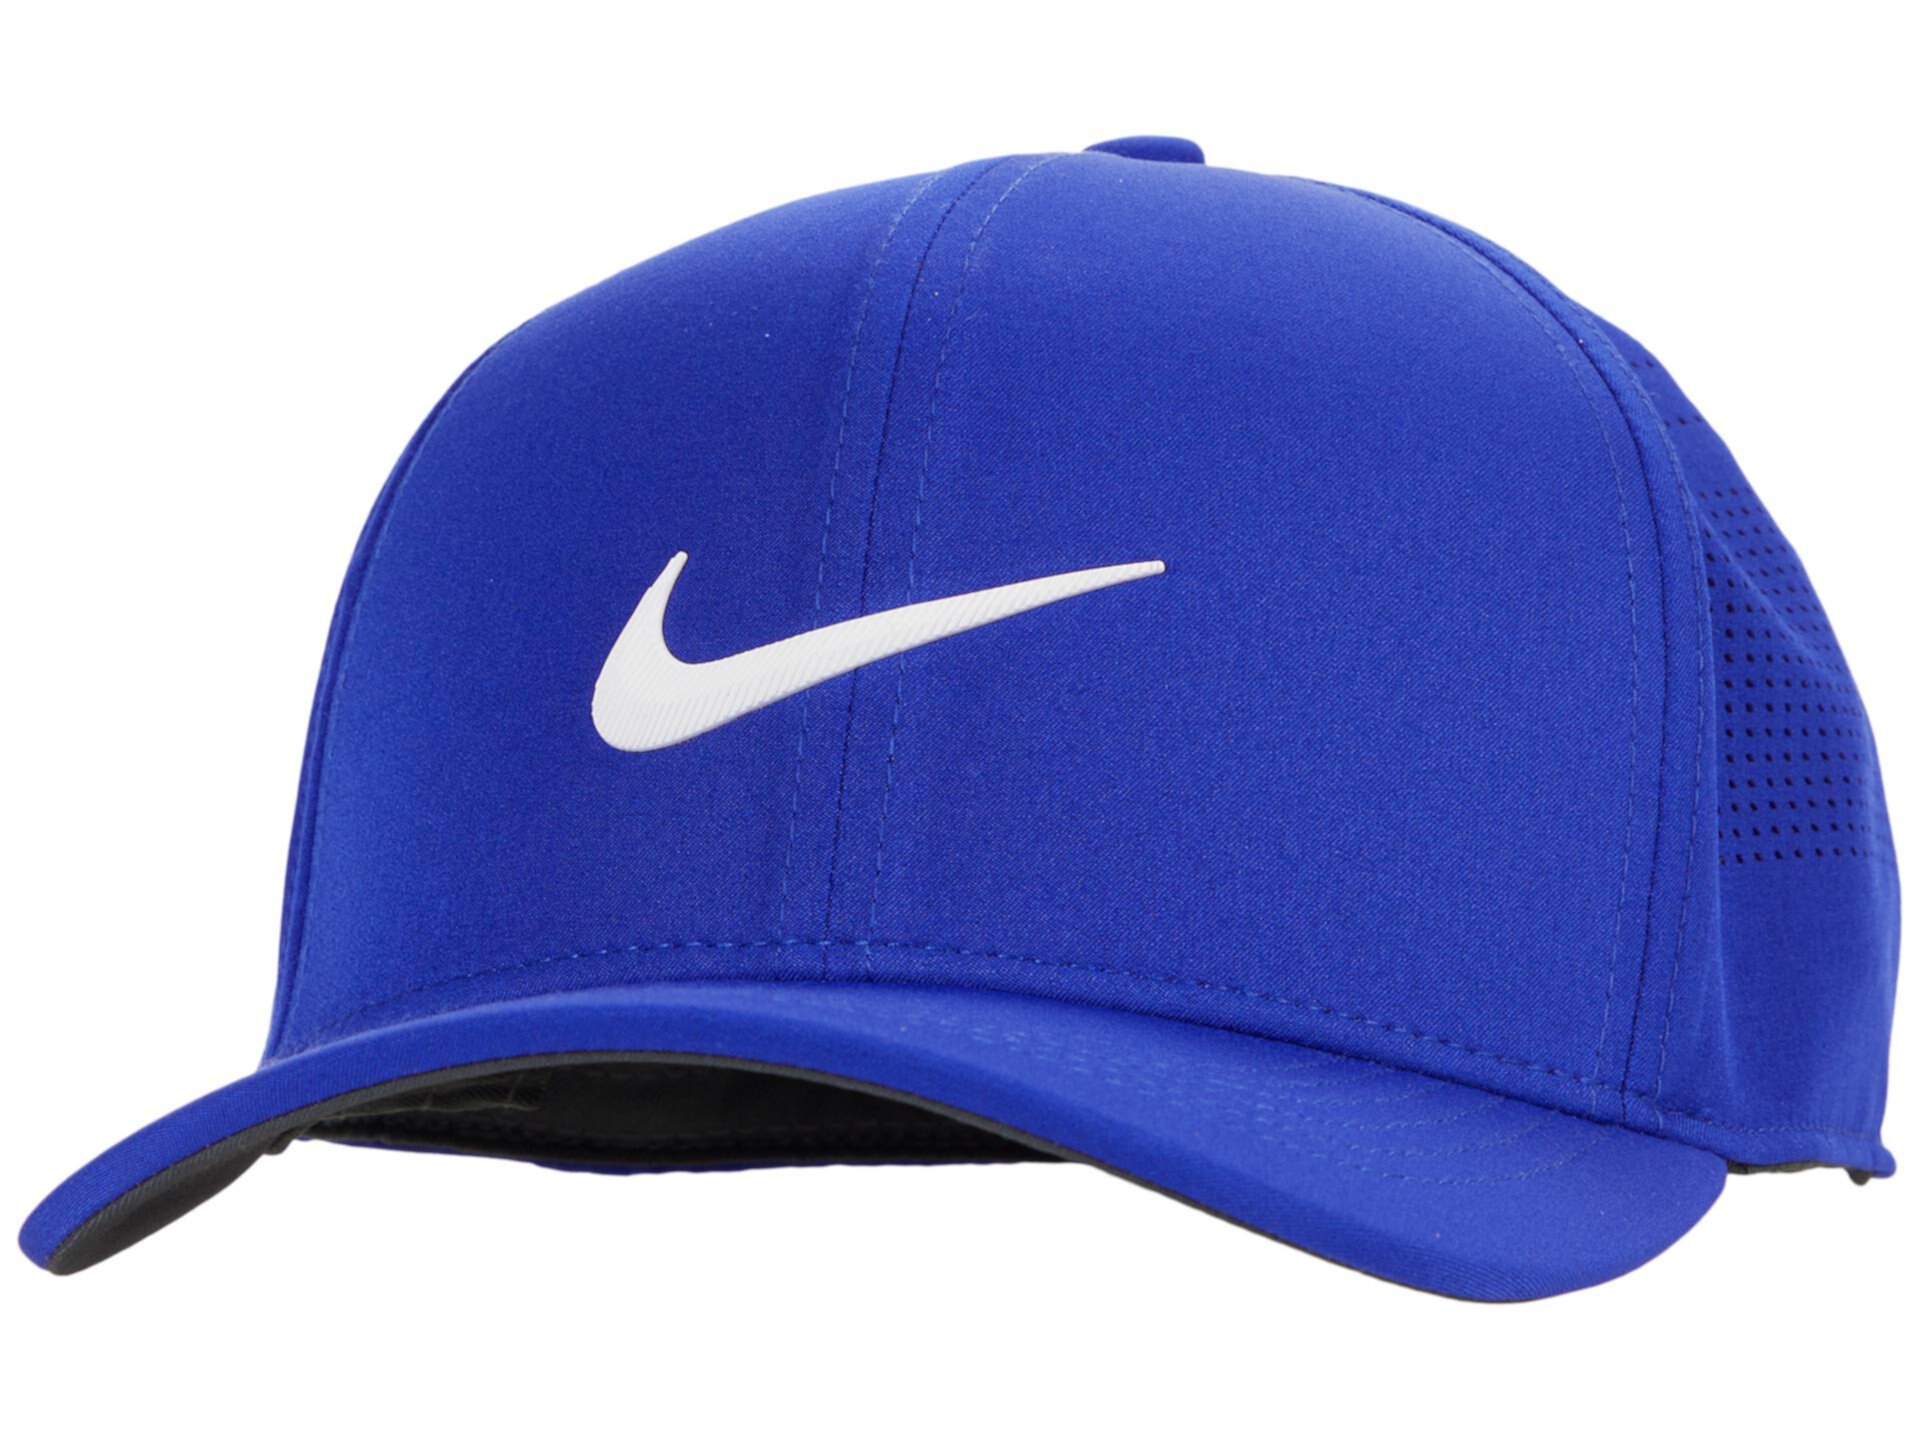 Перфорированная кепка Aerobill Classic99 Nike